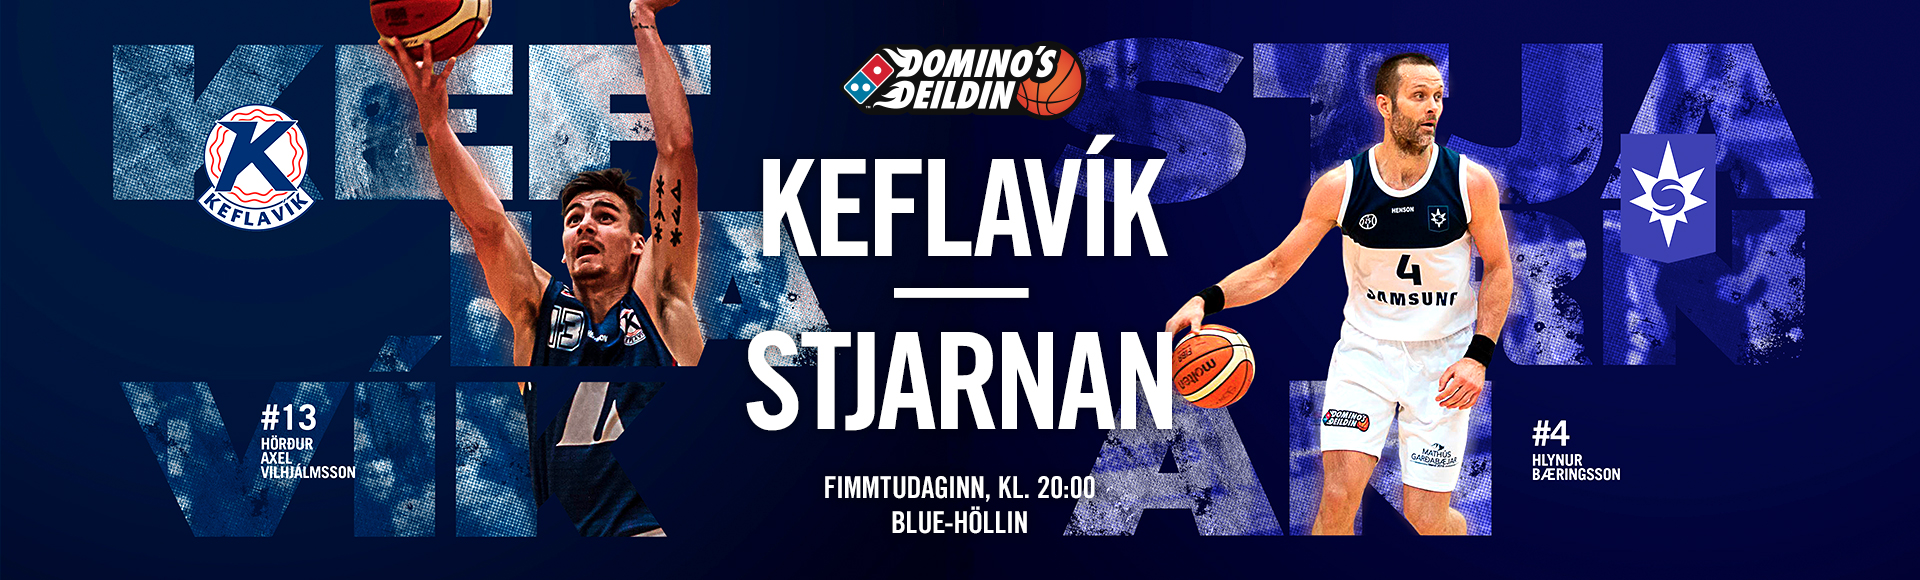 Domino's deild karla · Keflavík-Stjarnan í beinni á Stöð 2 Sport